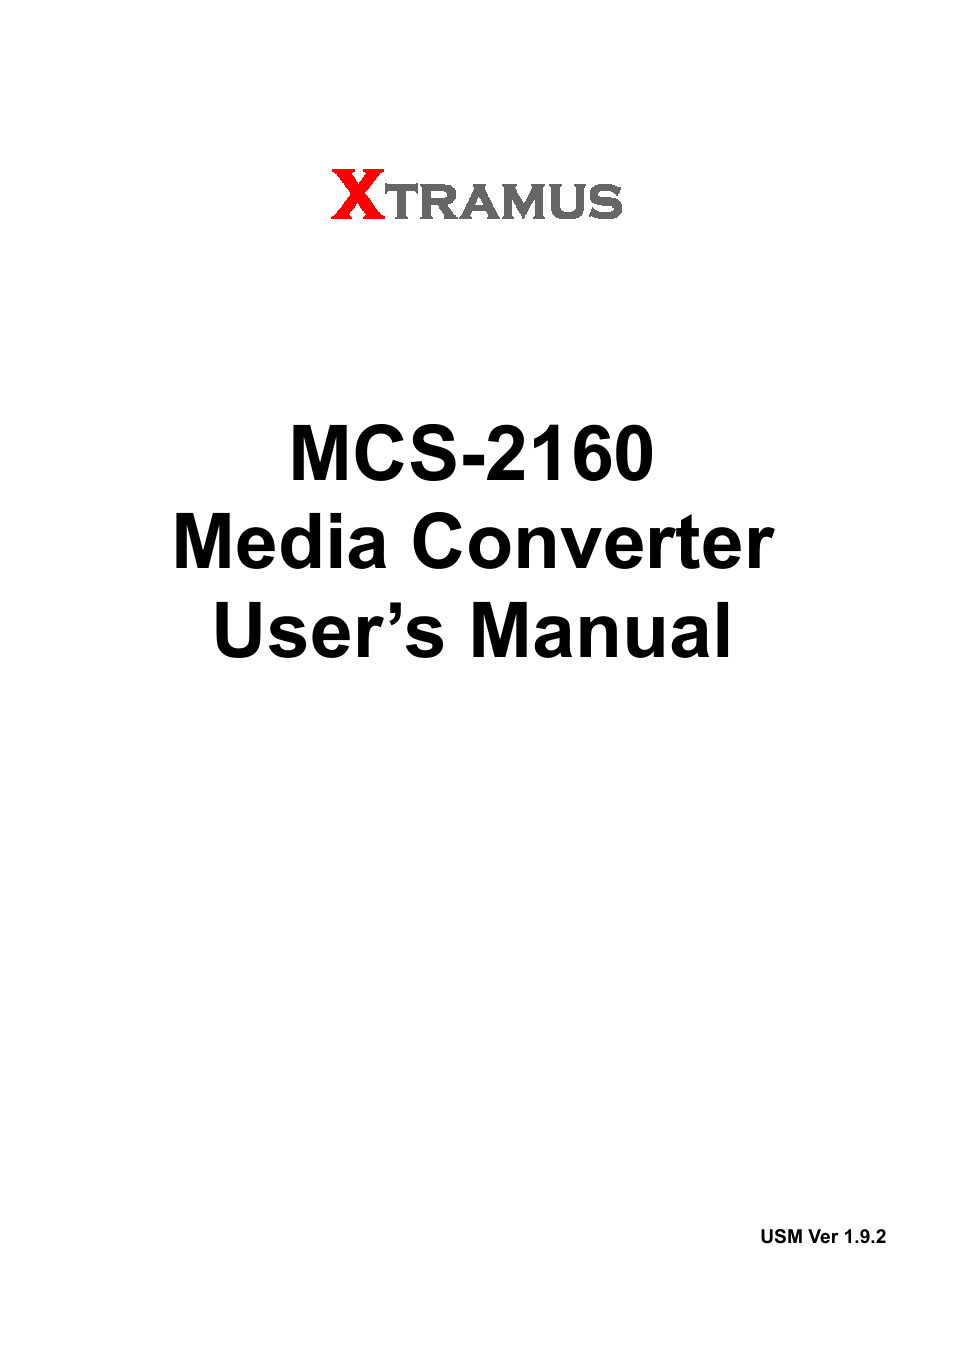 MCS-2160 V1.9.2